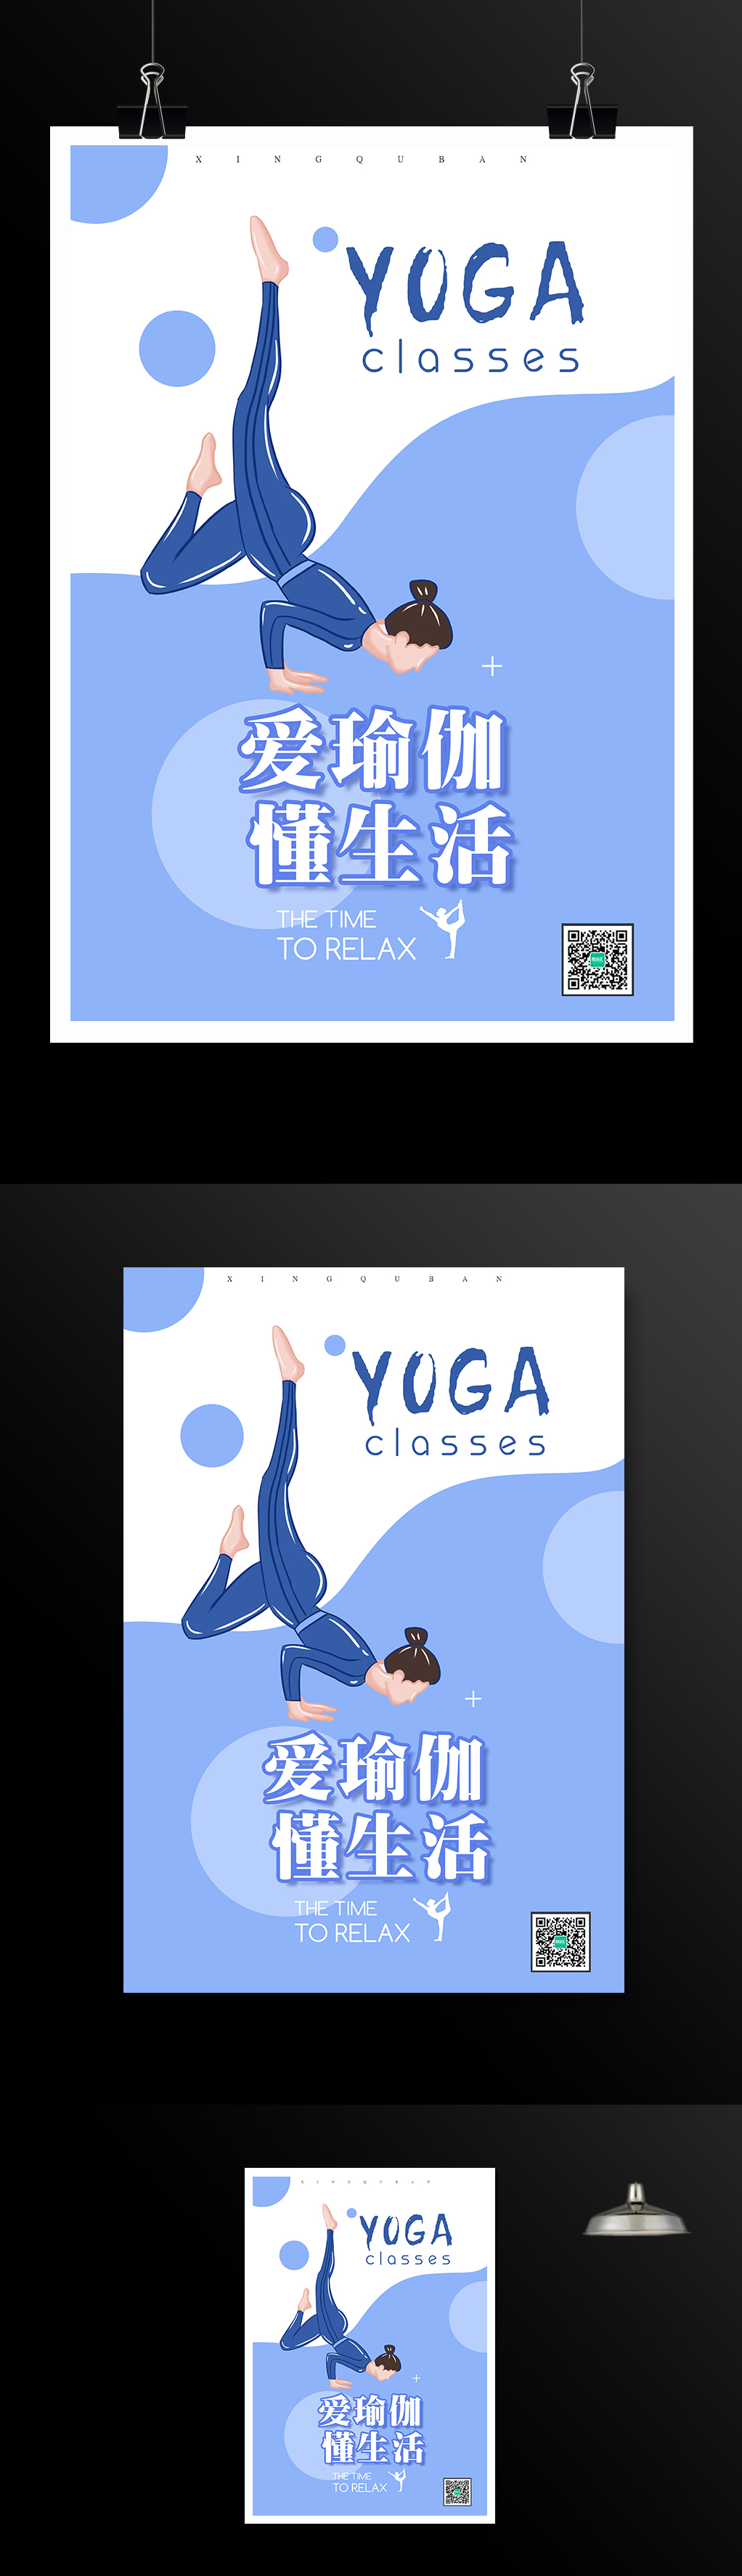 瑜伽健身运动海报模板